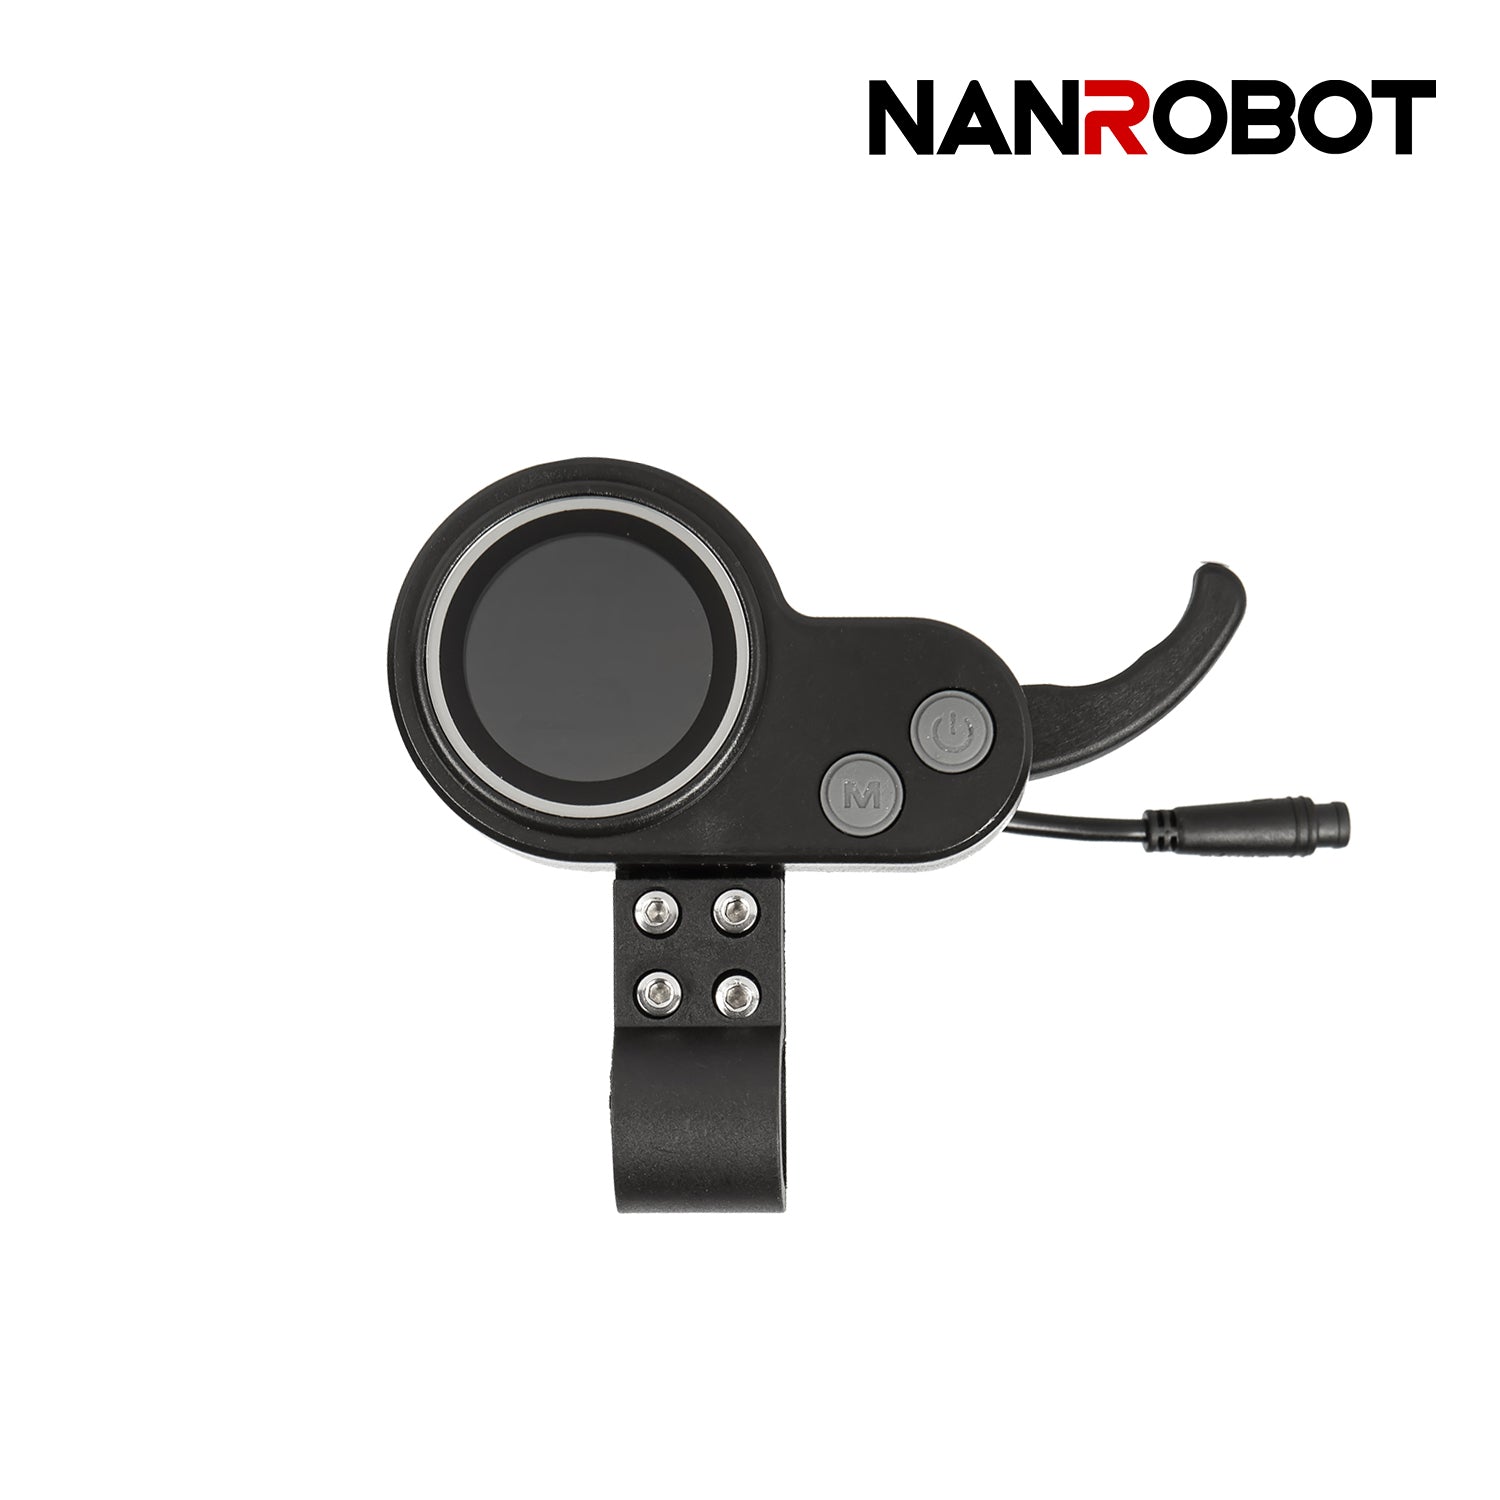 Control Panel - NANROBOT